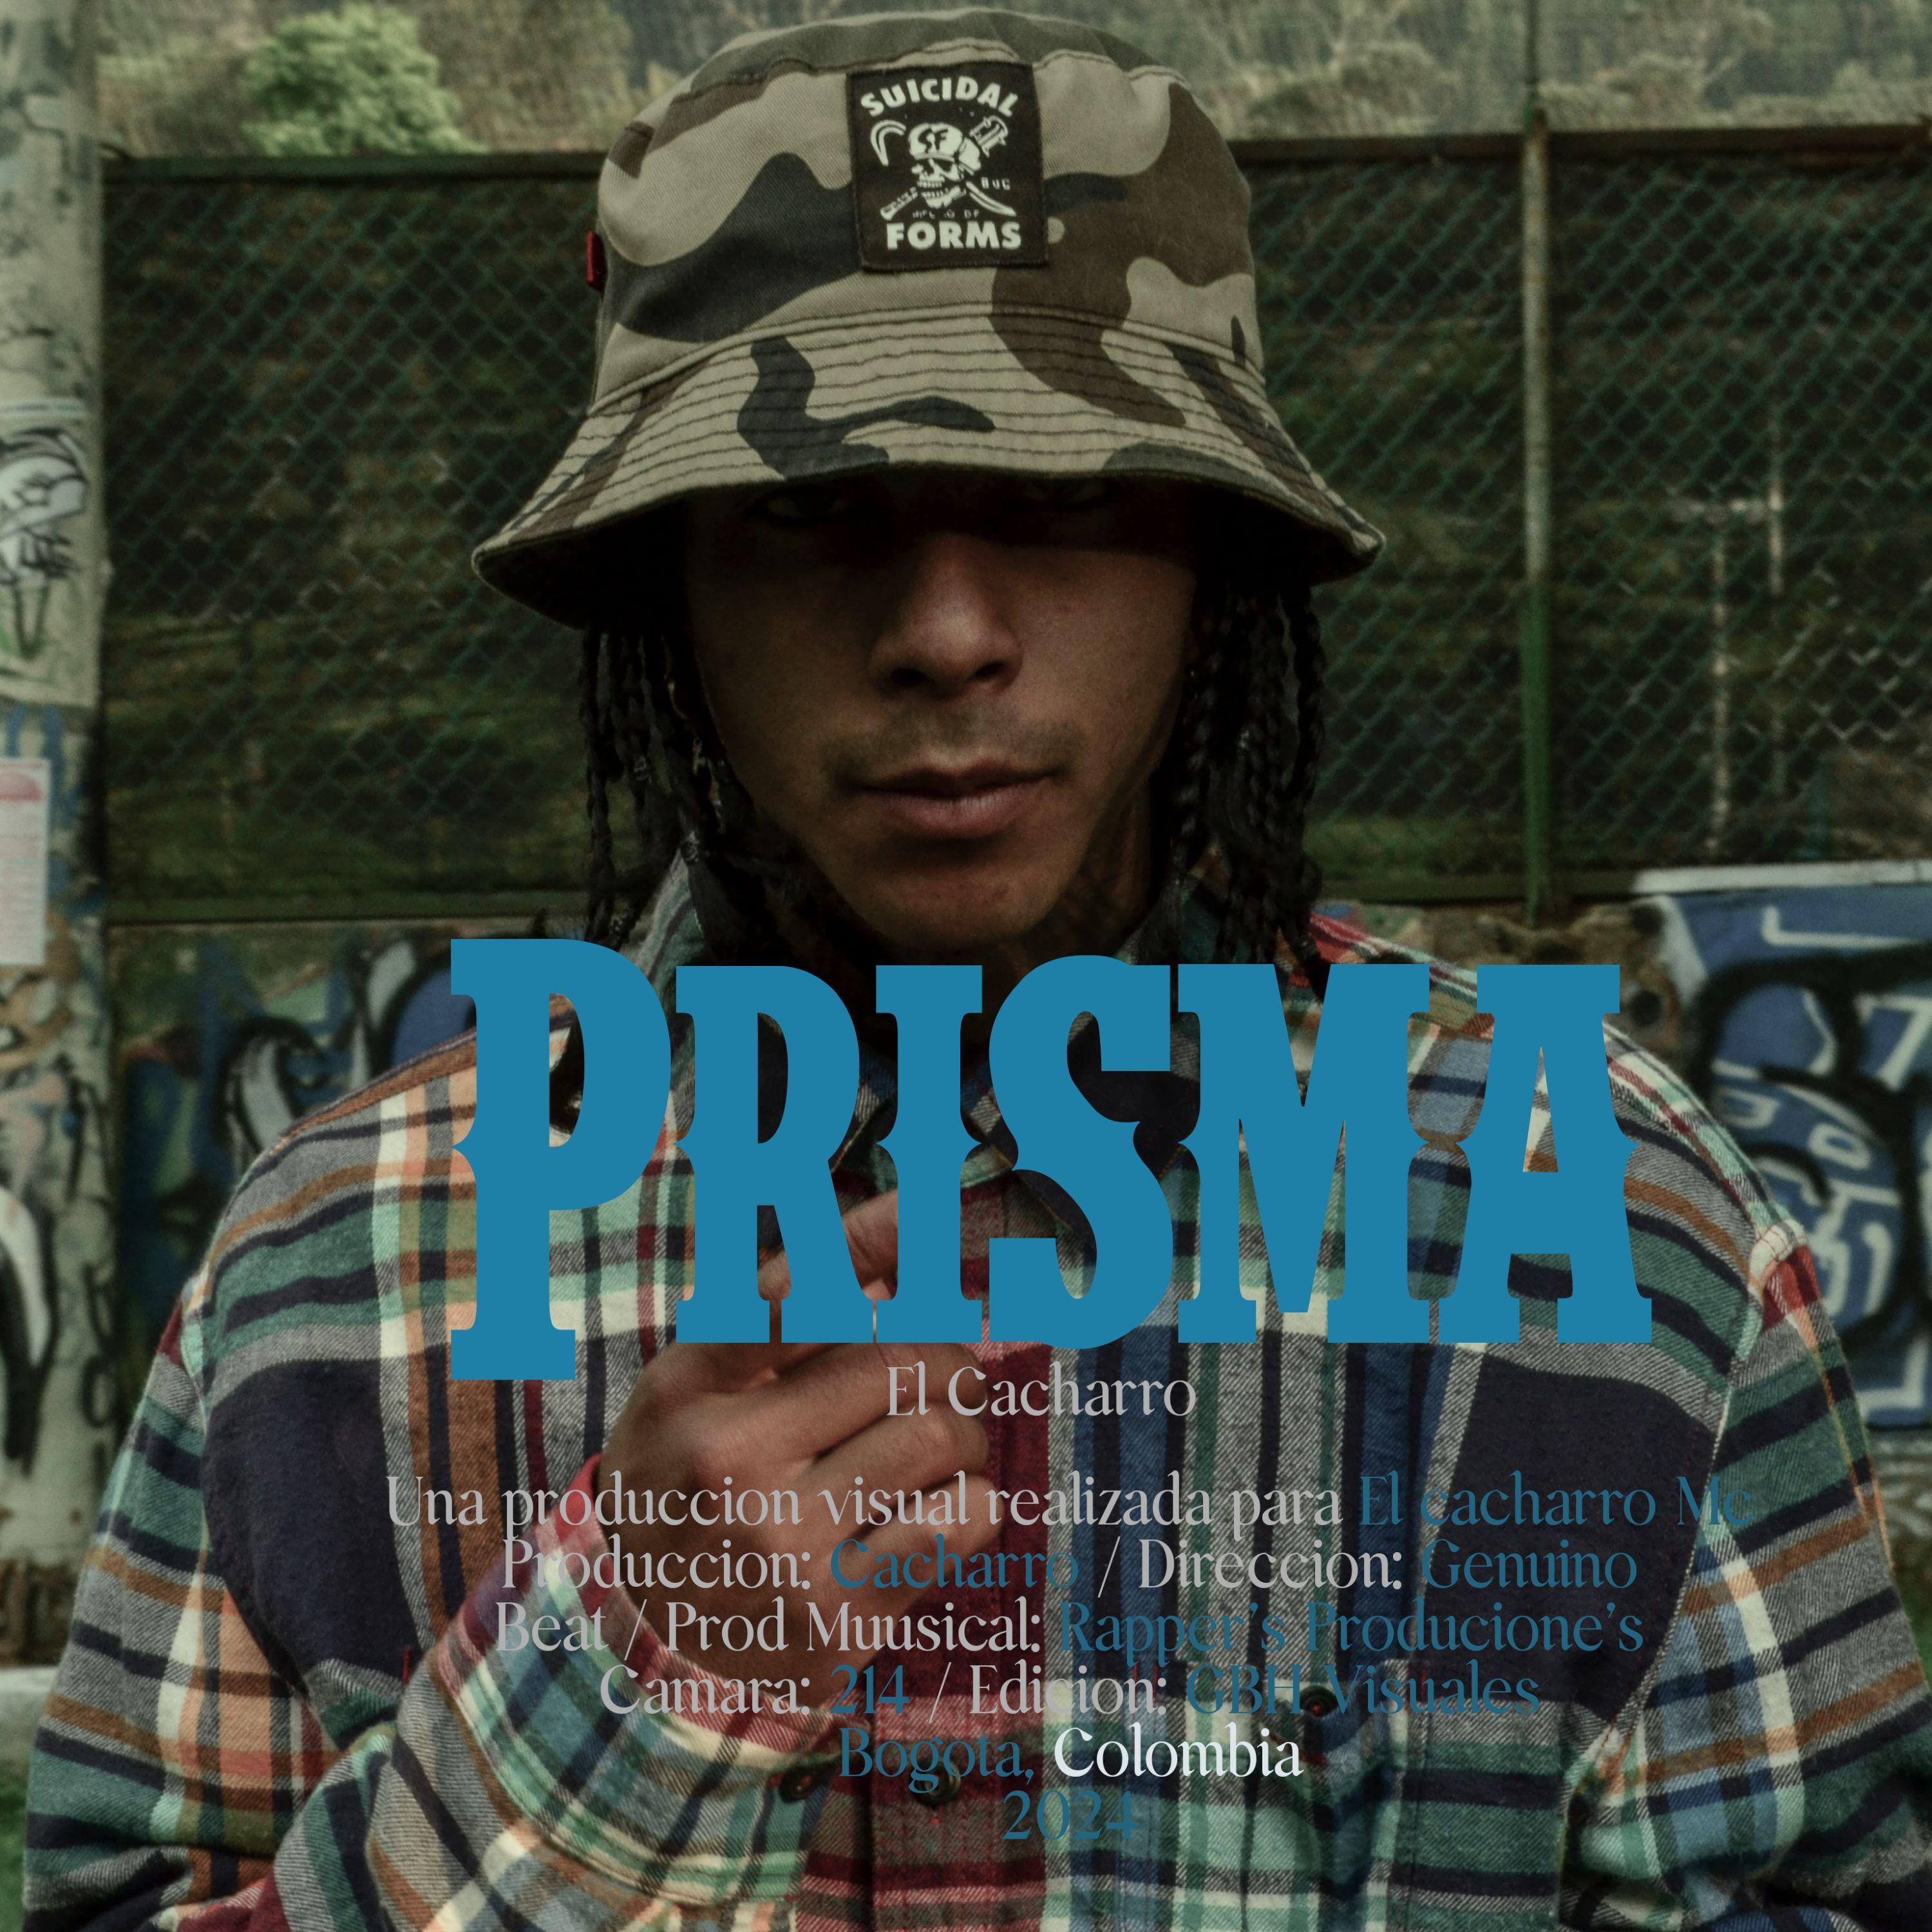 Постер альбома Prisma